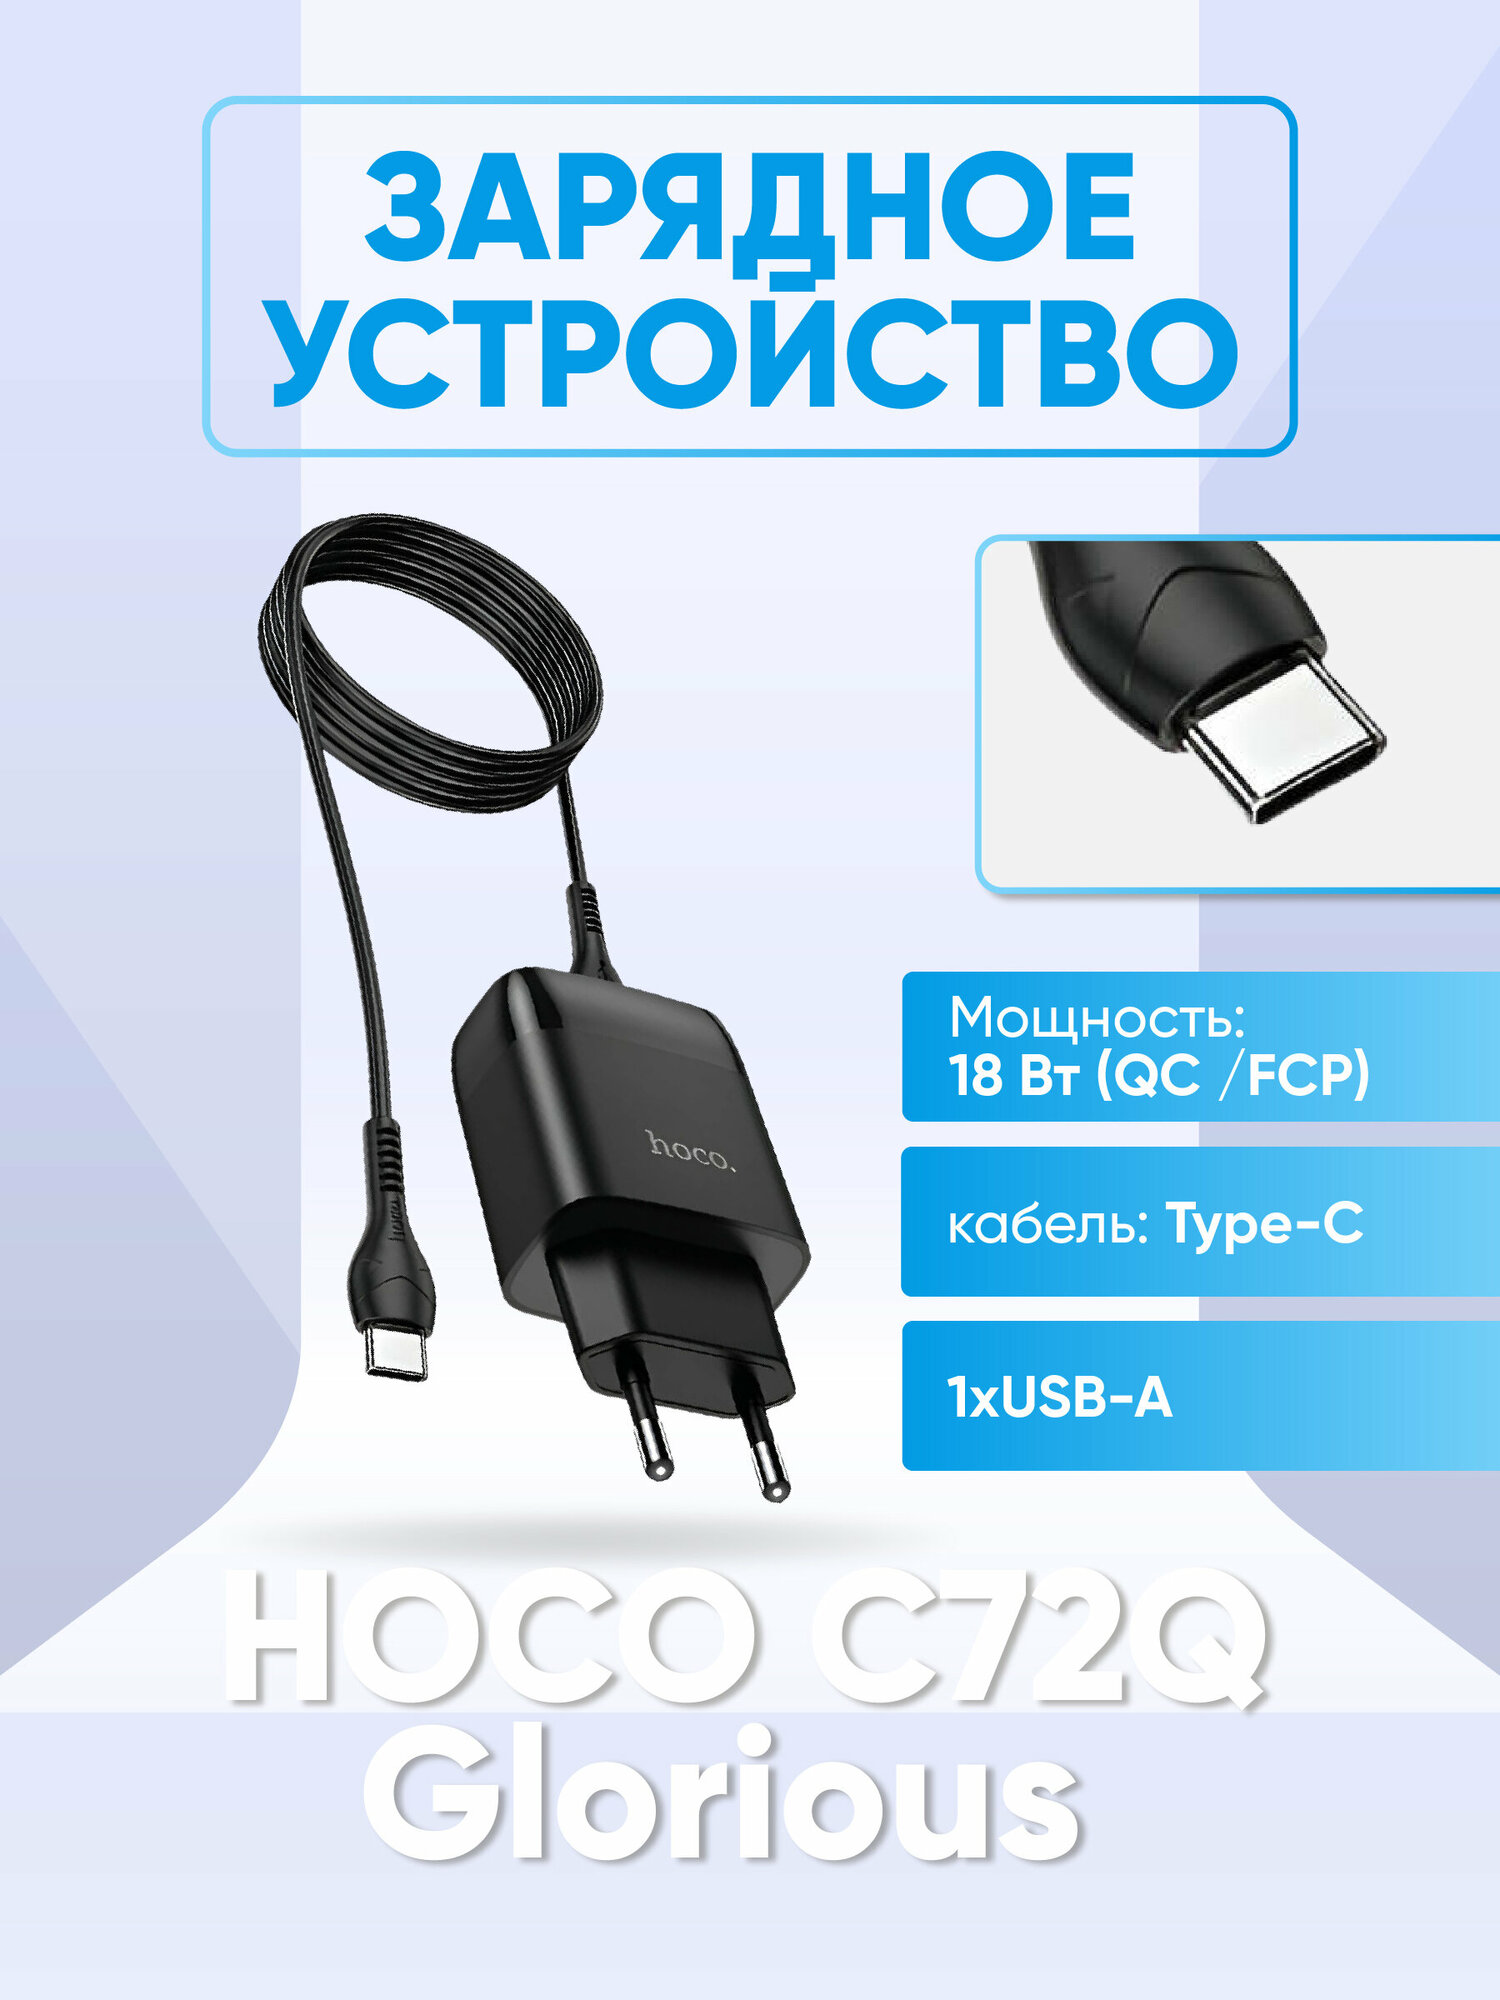 Зарядное устройство HOCO C72Q Glorious QC3.0, кабель Type-C, 1xUSB-A, черный